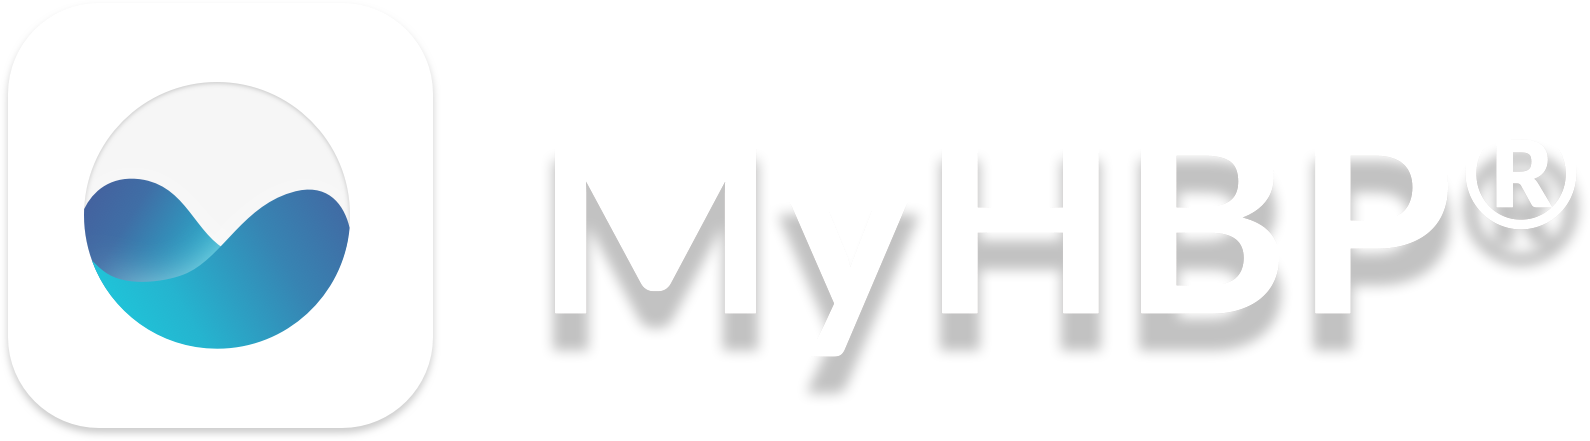 MyHBPCompany Logo